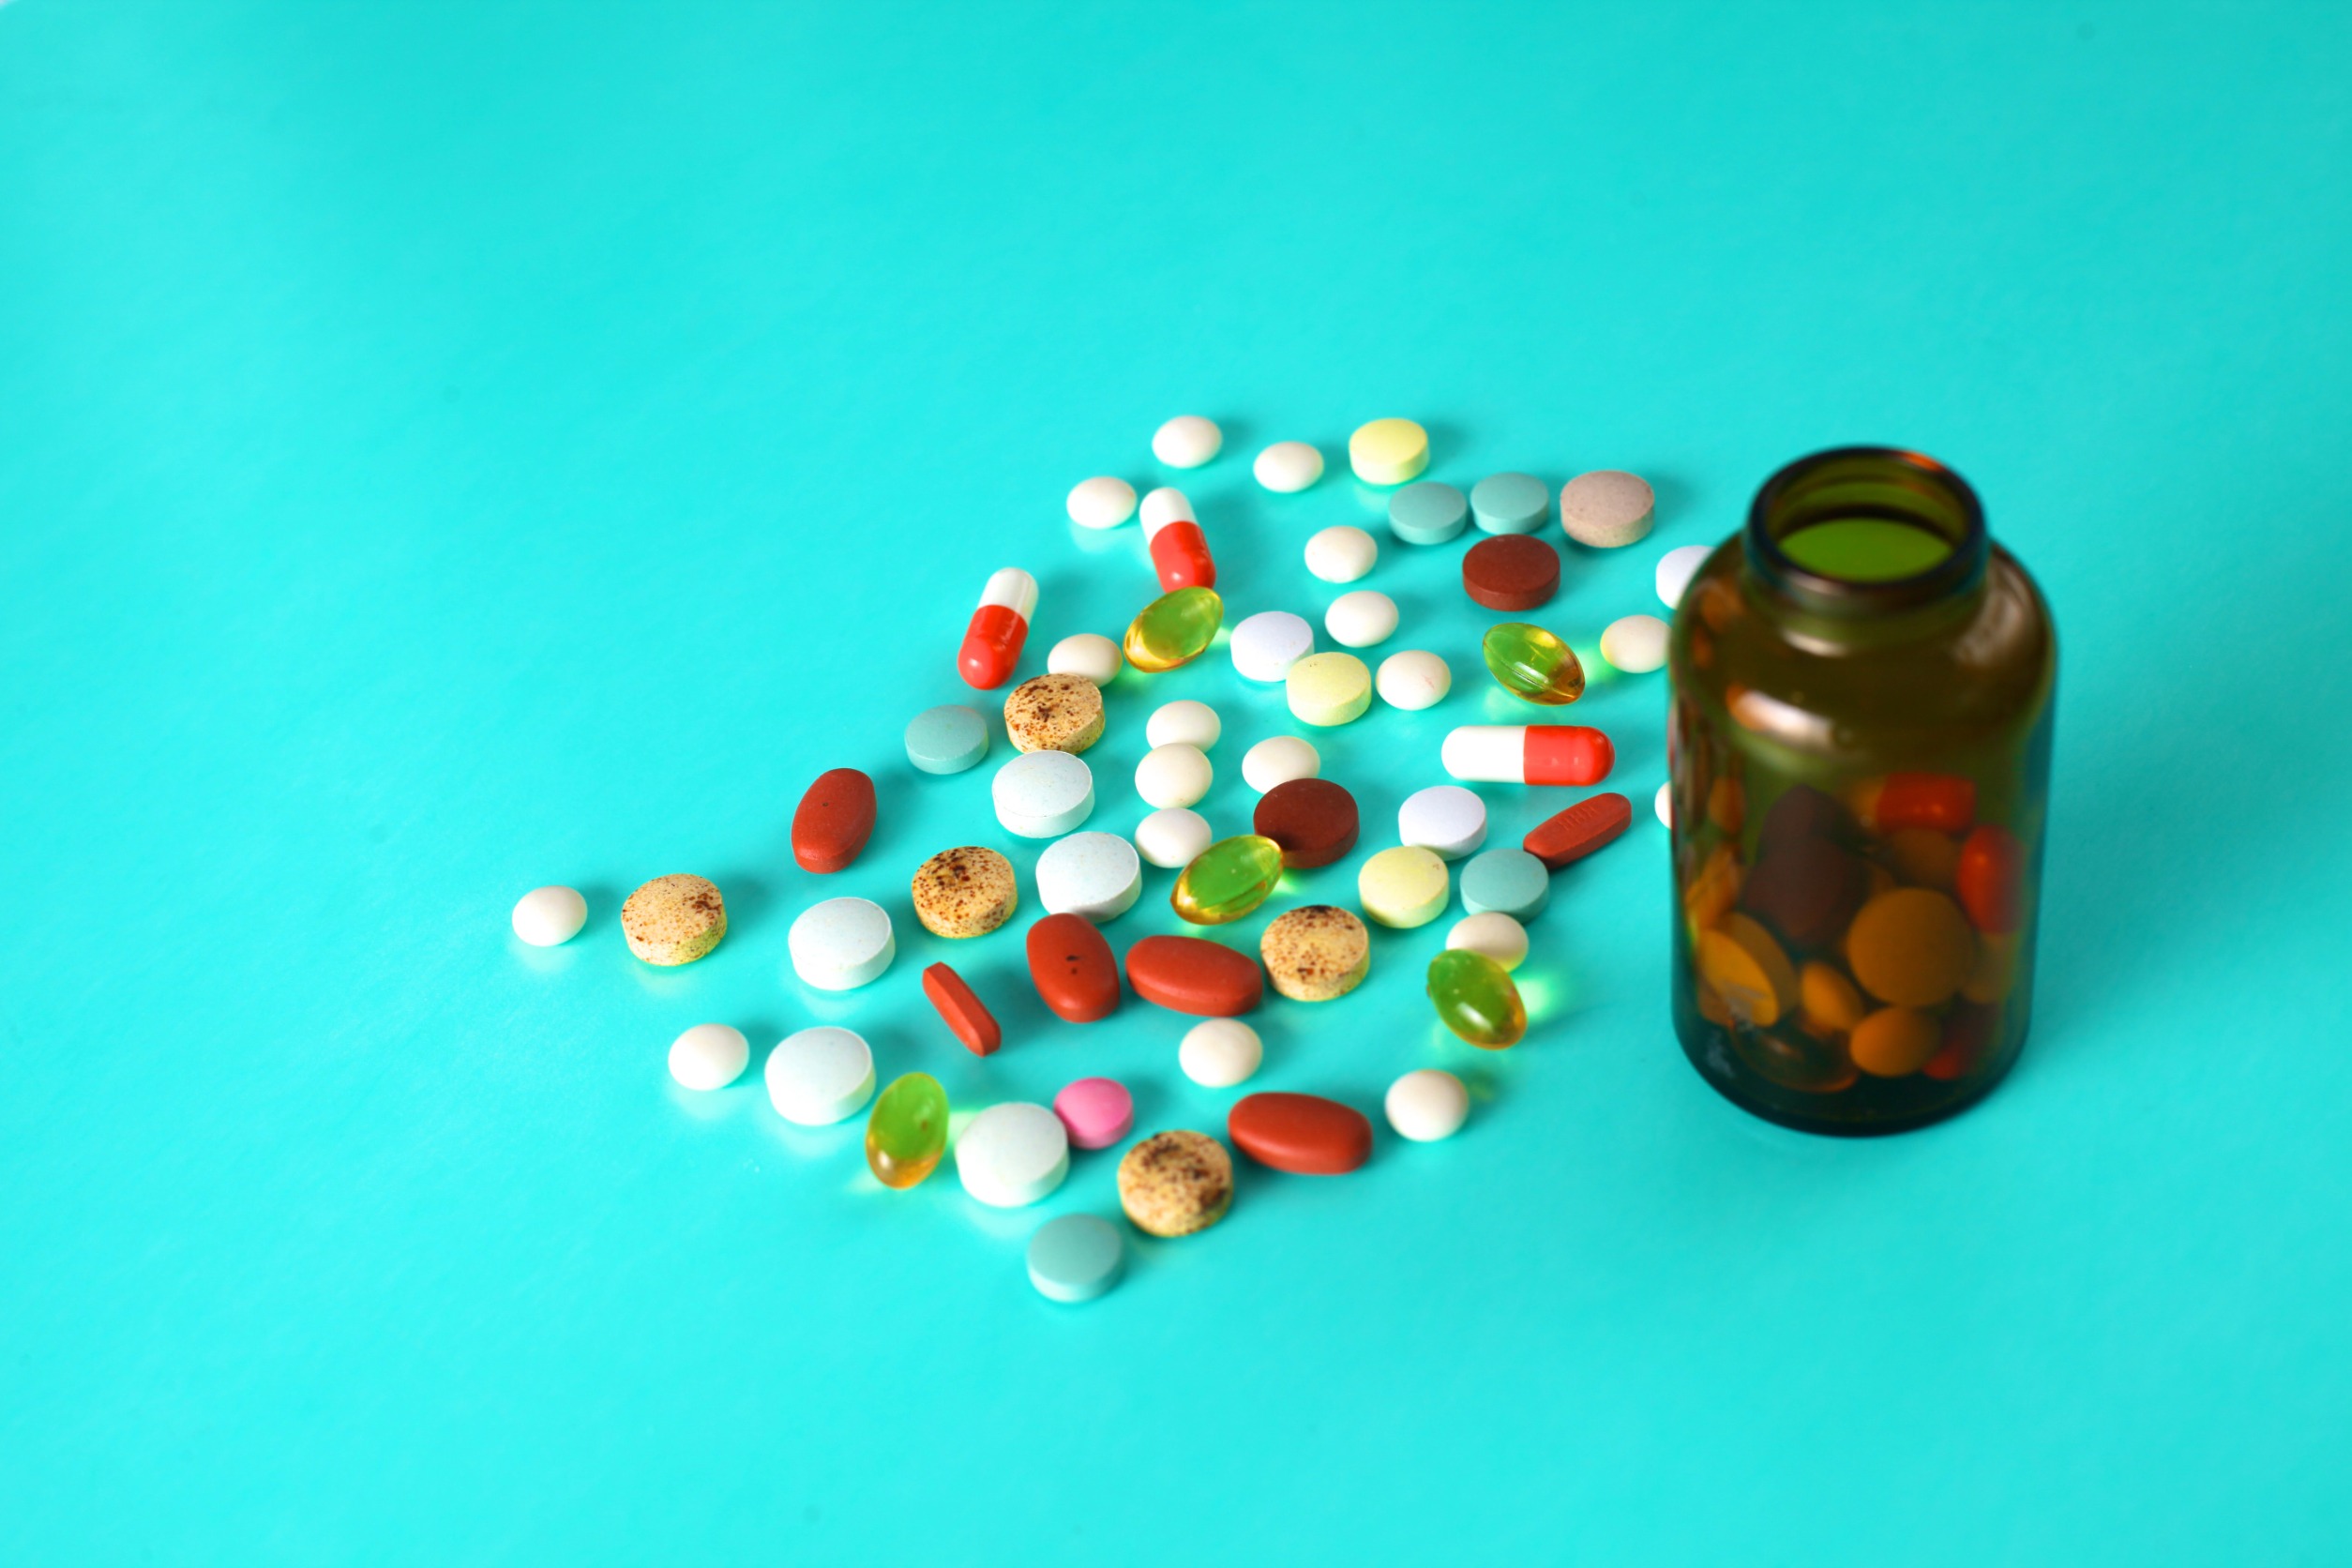 Lekarstwa w formie tabletek wysypane z opakowania na niebieski blat. /Źródło: 123rf.com